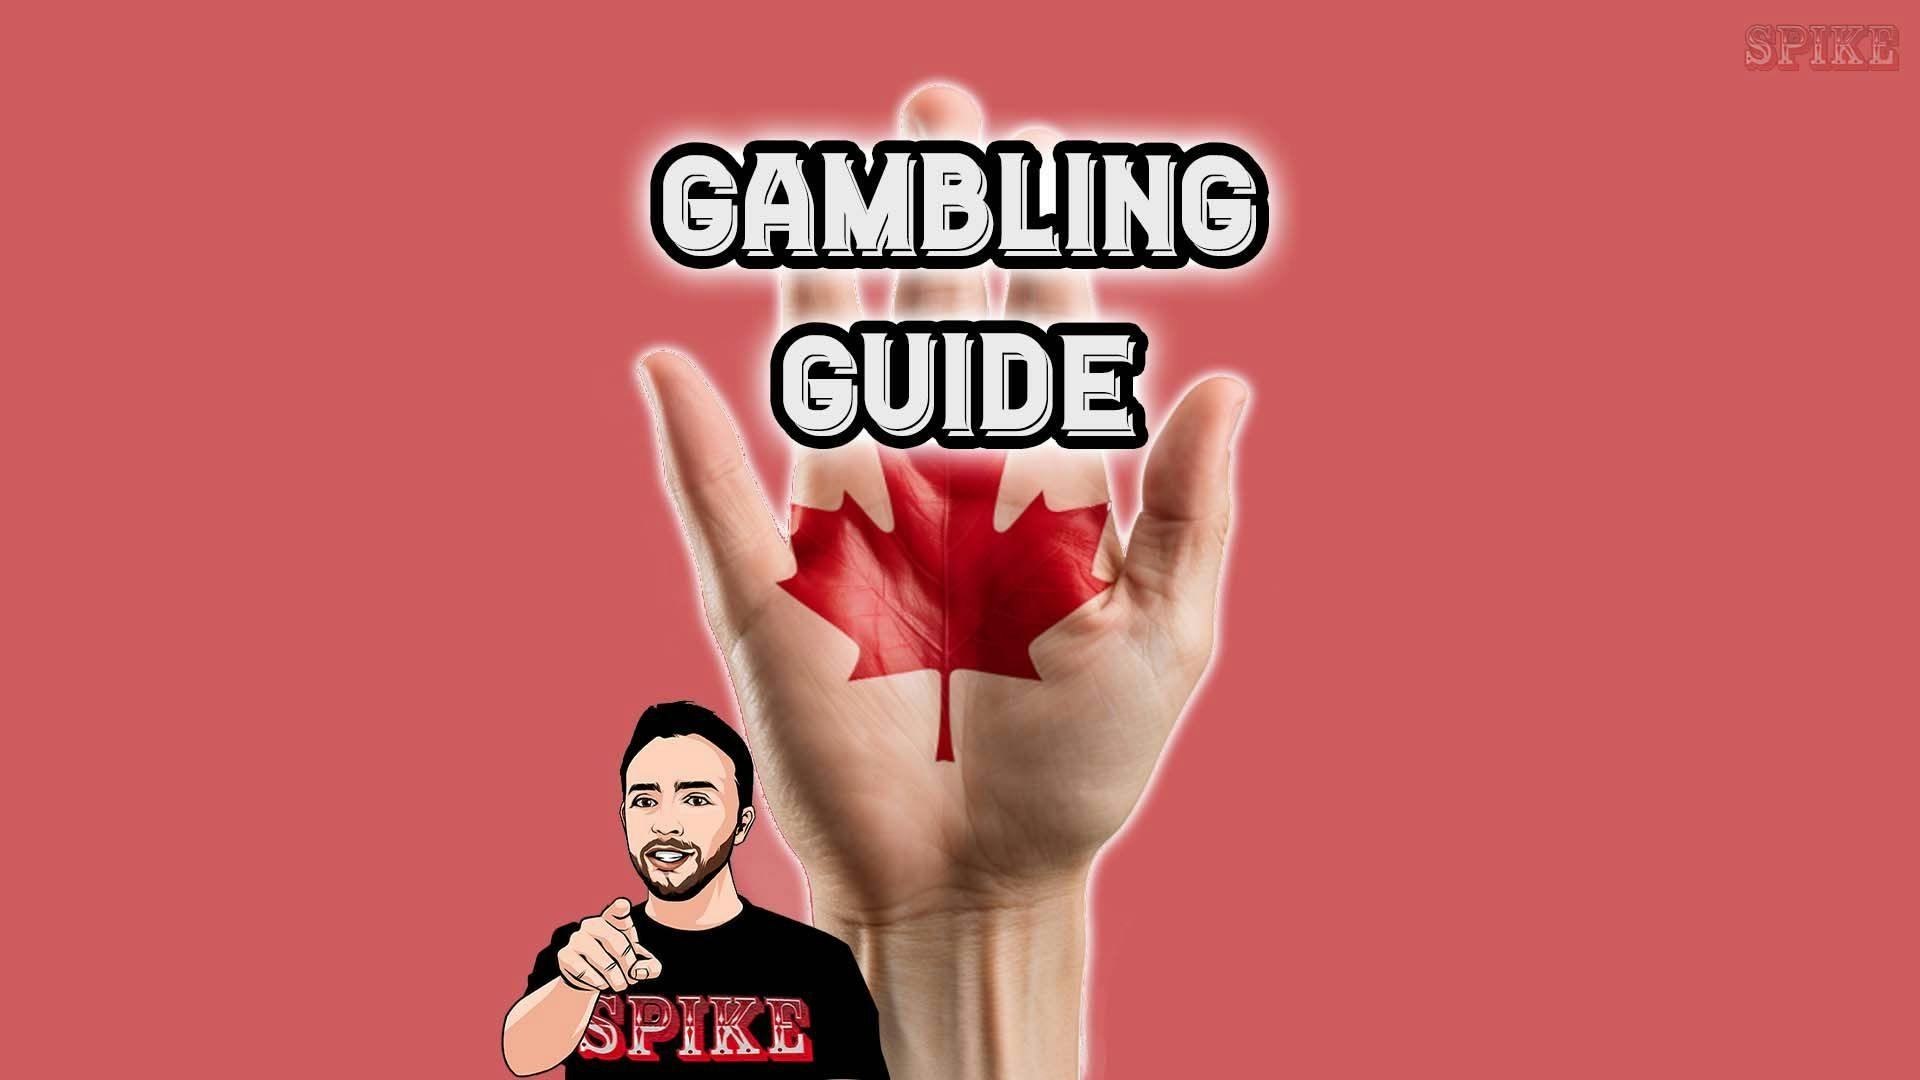 Canada Responsible Gambling Guide